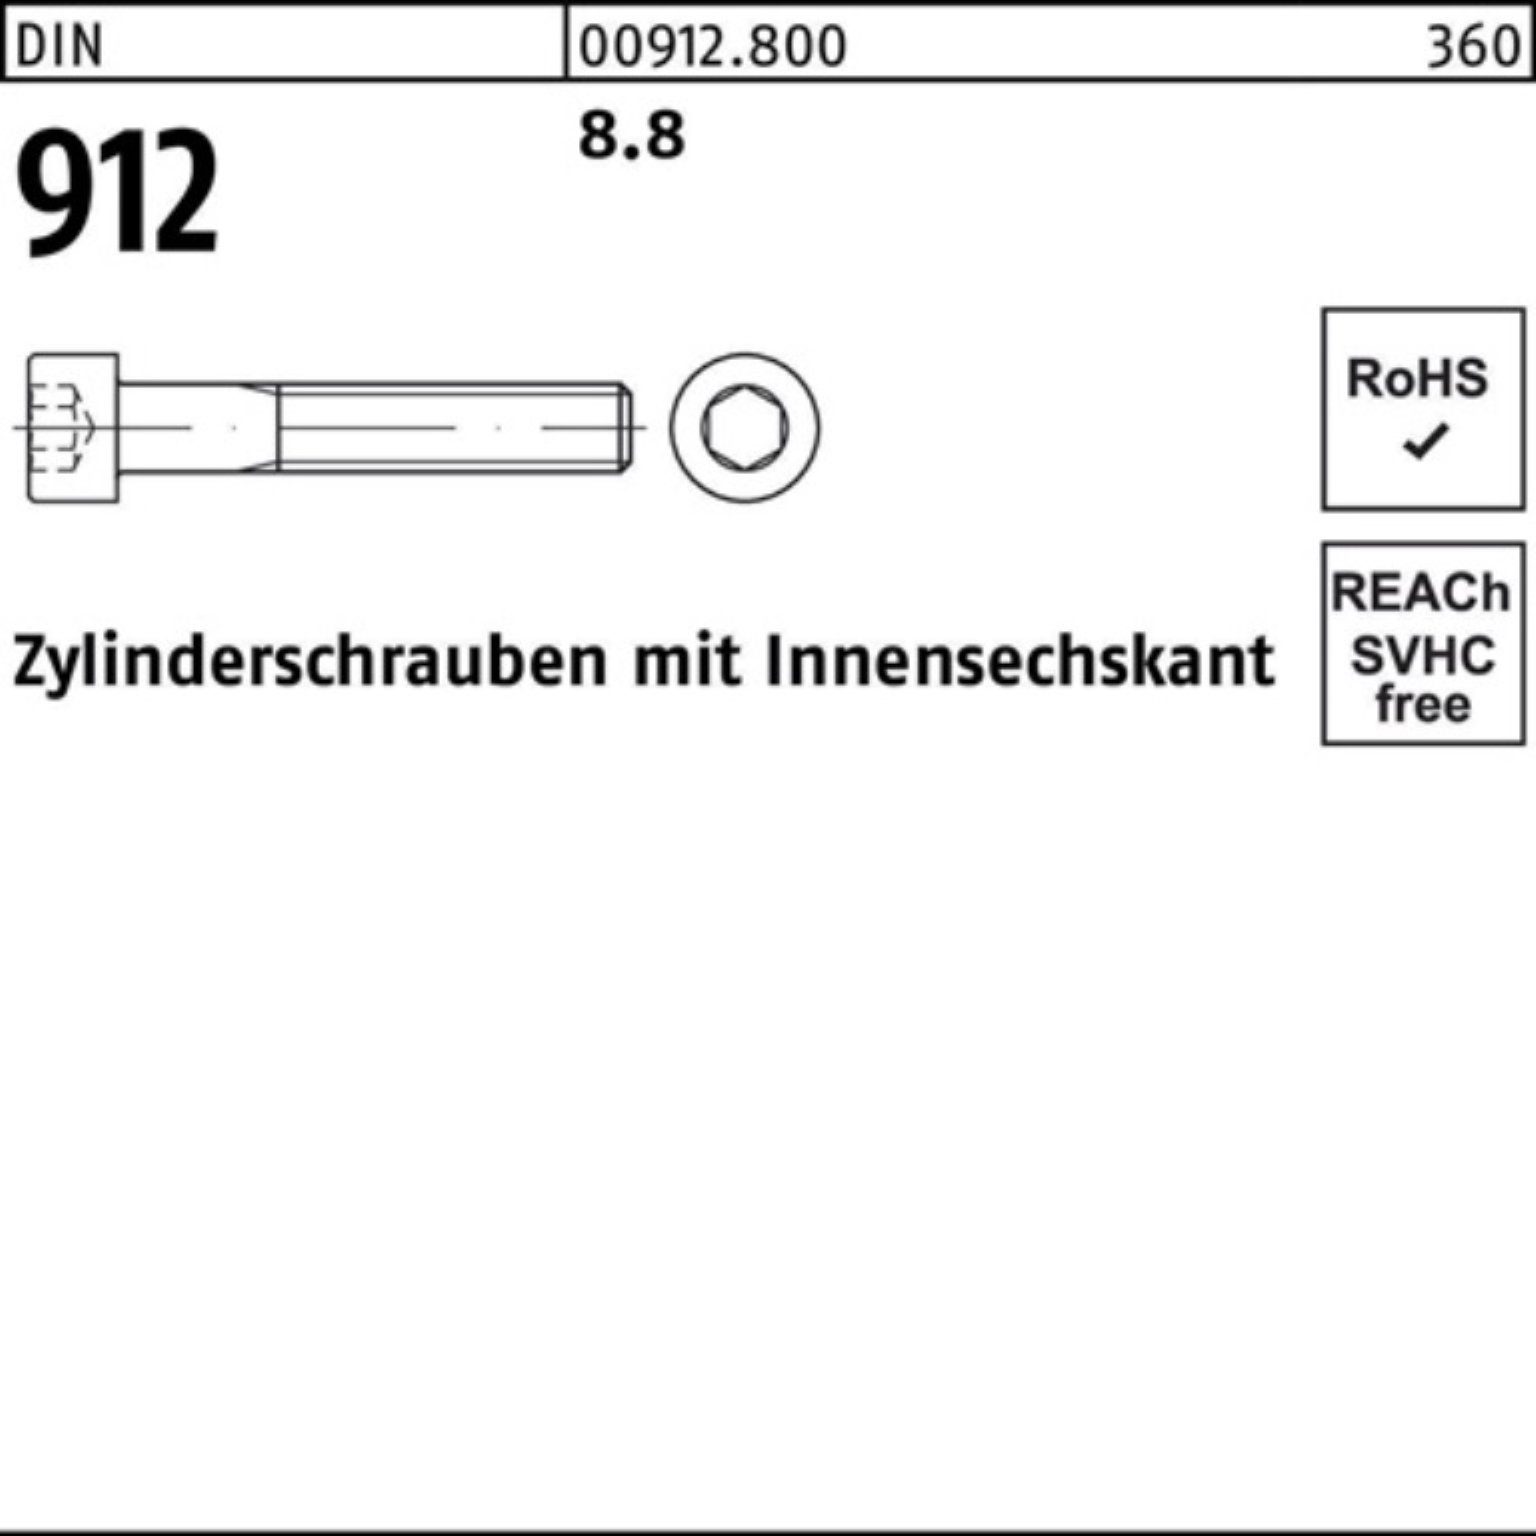 DIN 100er Reyher Zylinderschraube Stück Pack Zylinderschraube M42x Innen-6kt 1 8.8 912 DI 110